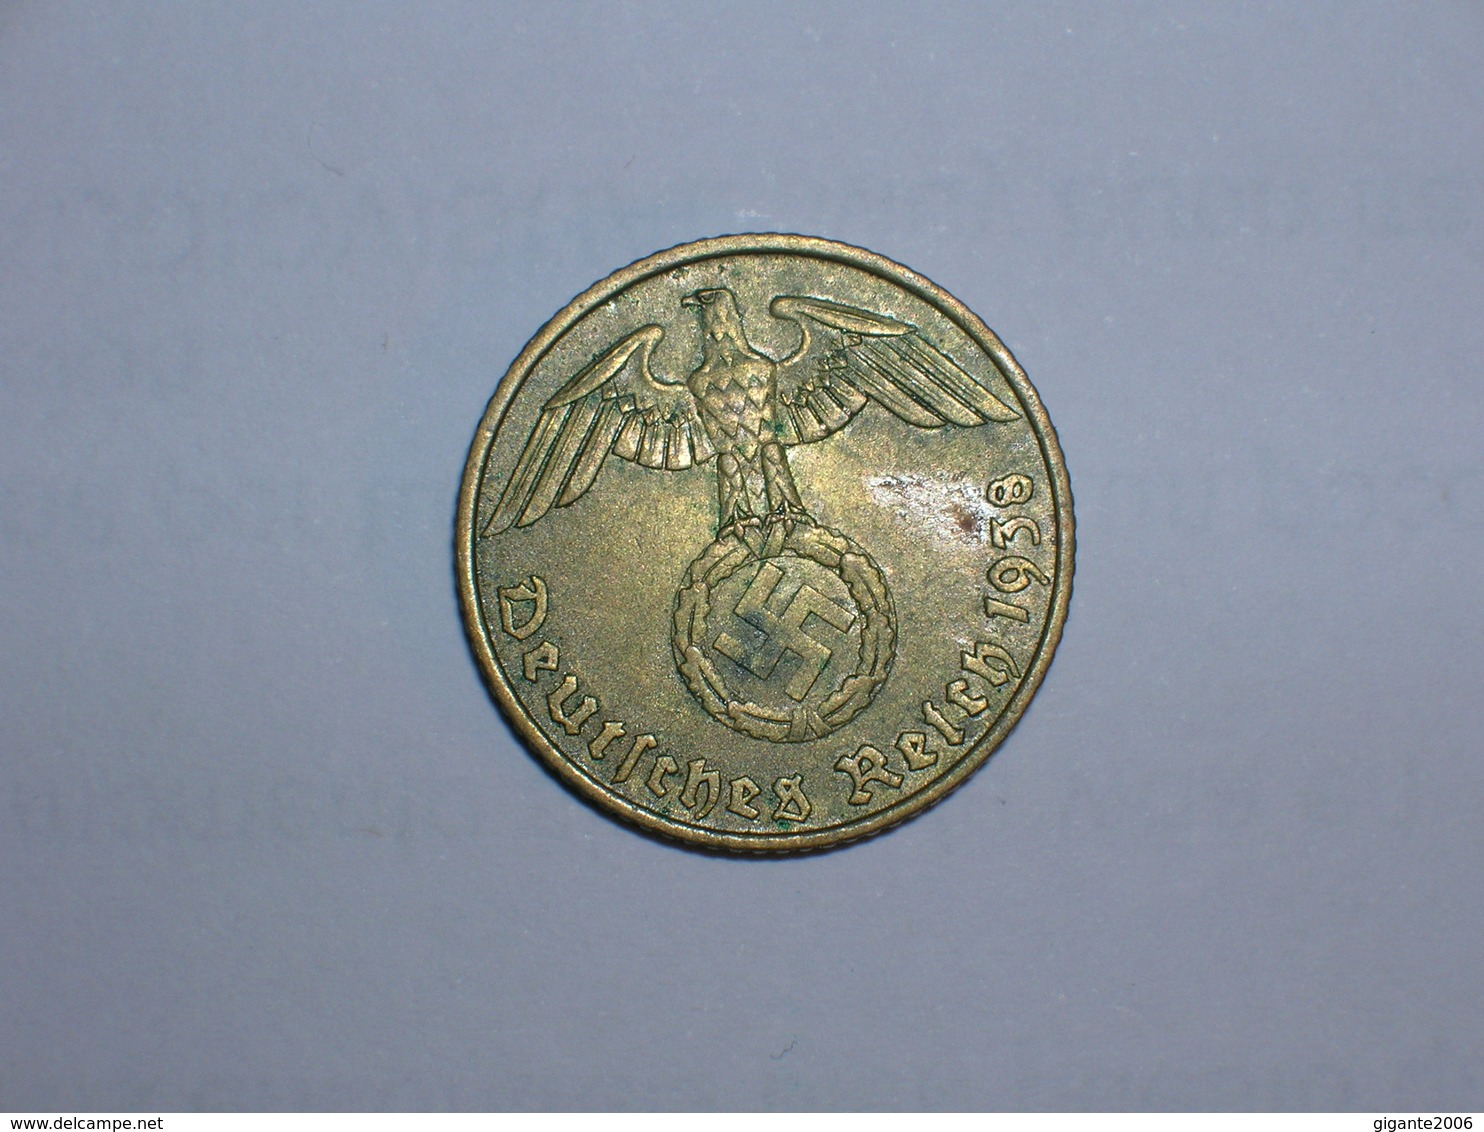 ALEMANIA- 5 PFENNIG 1938 A (897) - 5 Reichspfennig